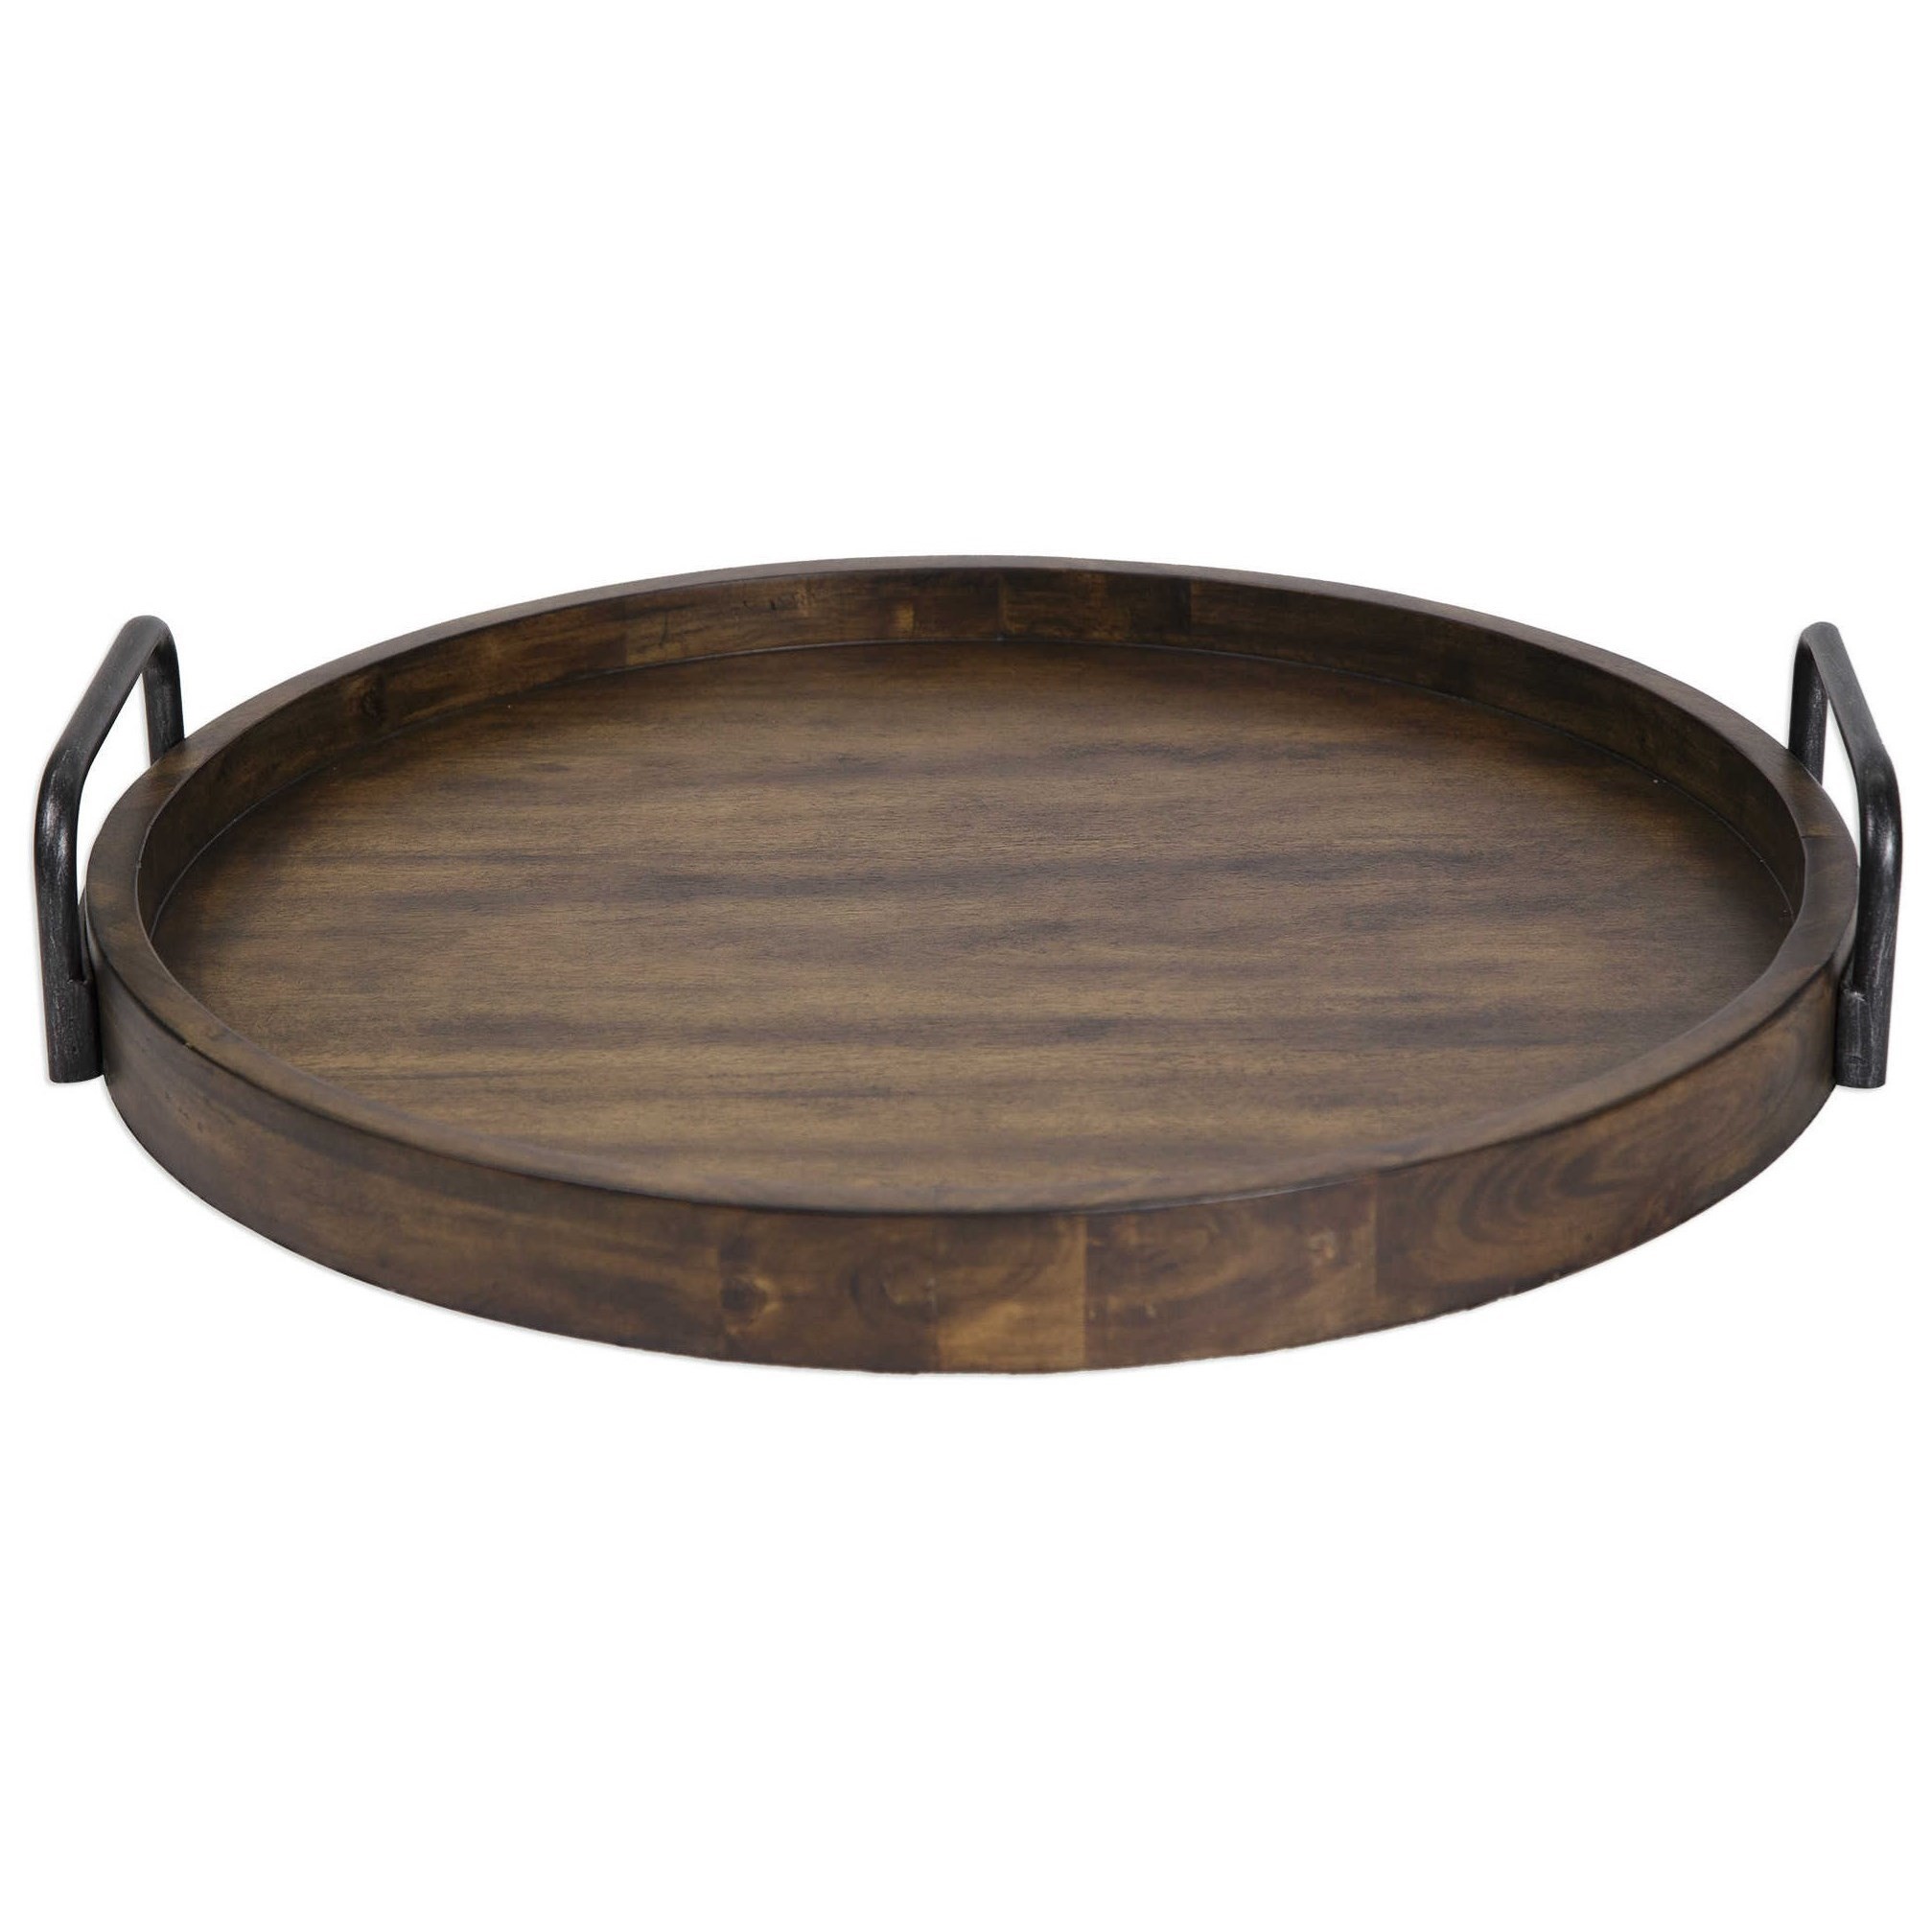 Uttermost accessories 18749 reine round wooden tray